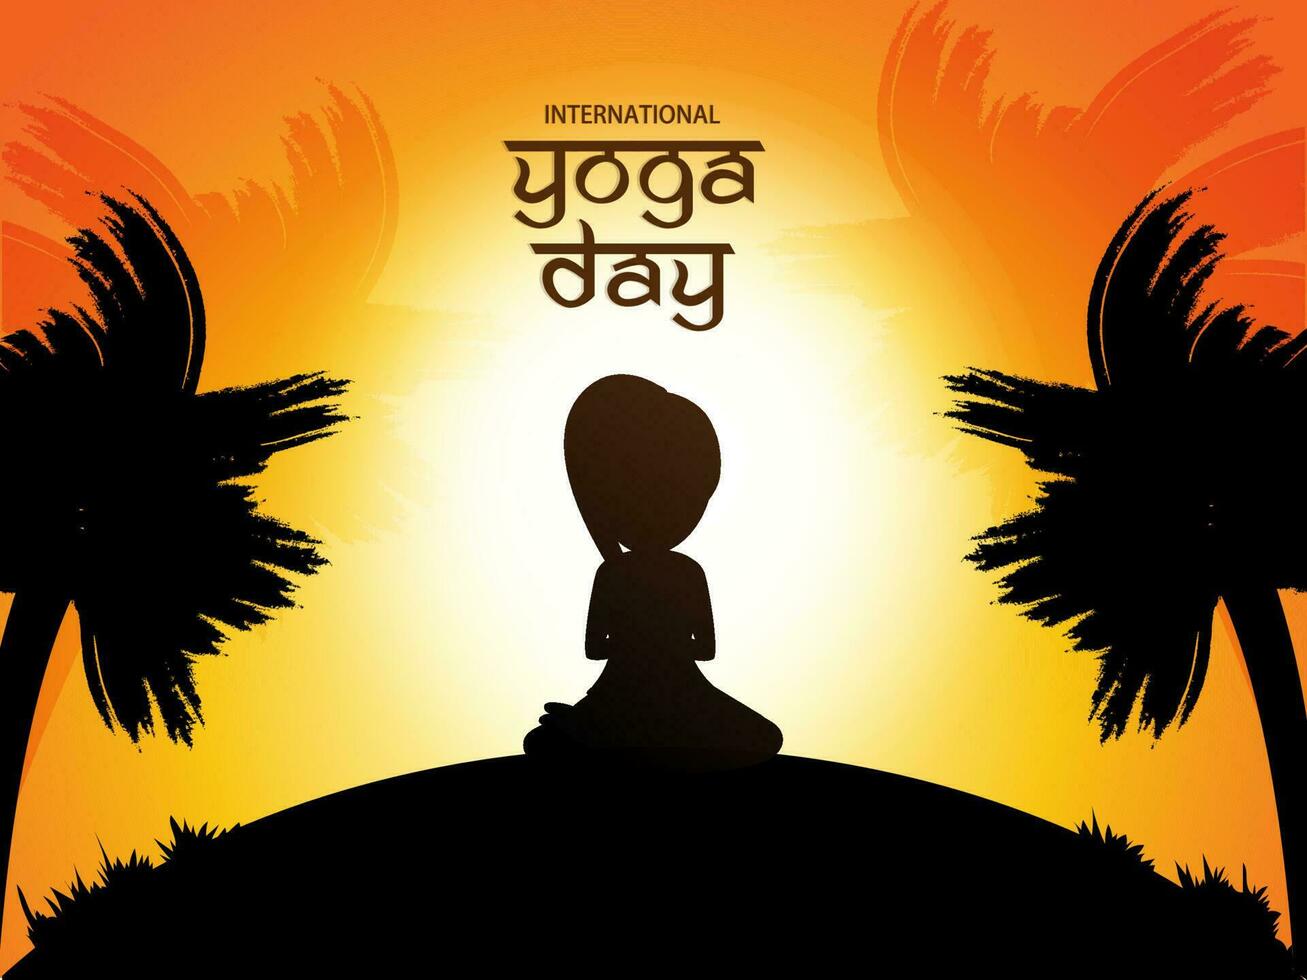 affisch eller baner design för internationell yoga dag. kreativ text av yoga dag med silhuett av en kvinna i yoga hållning. vektor